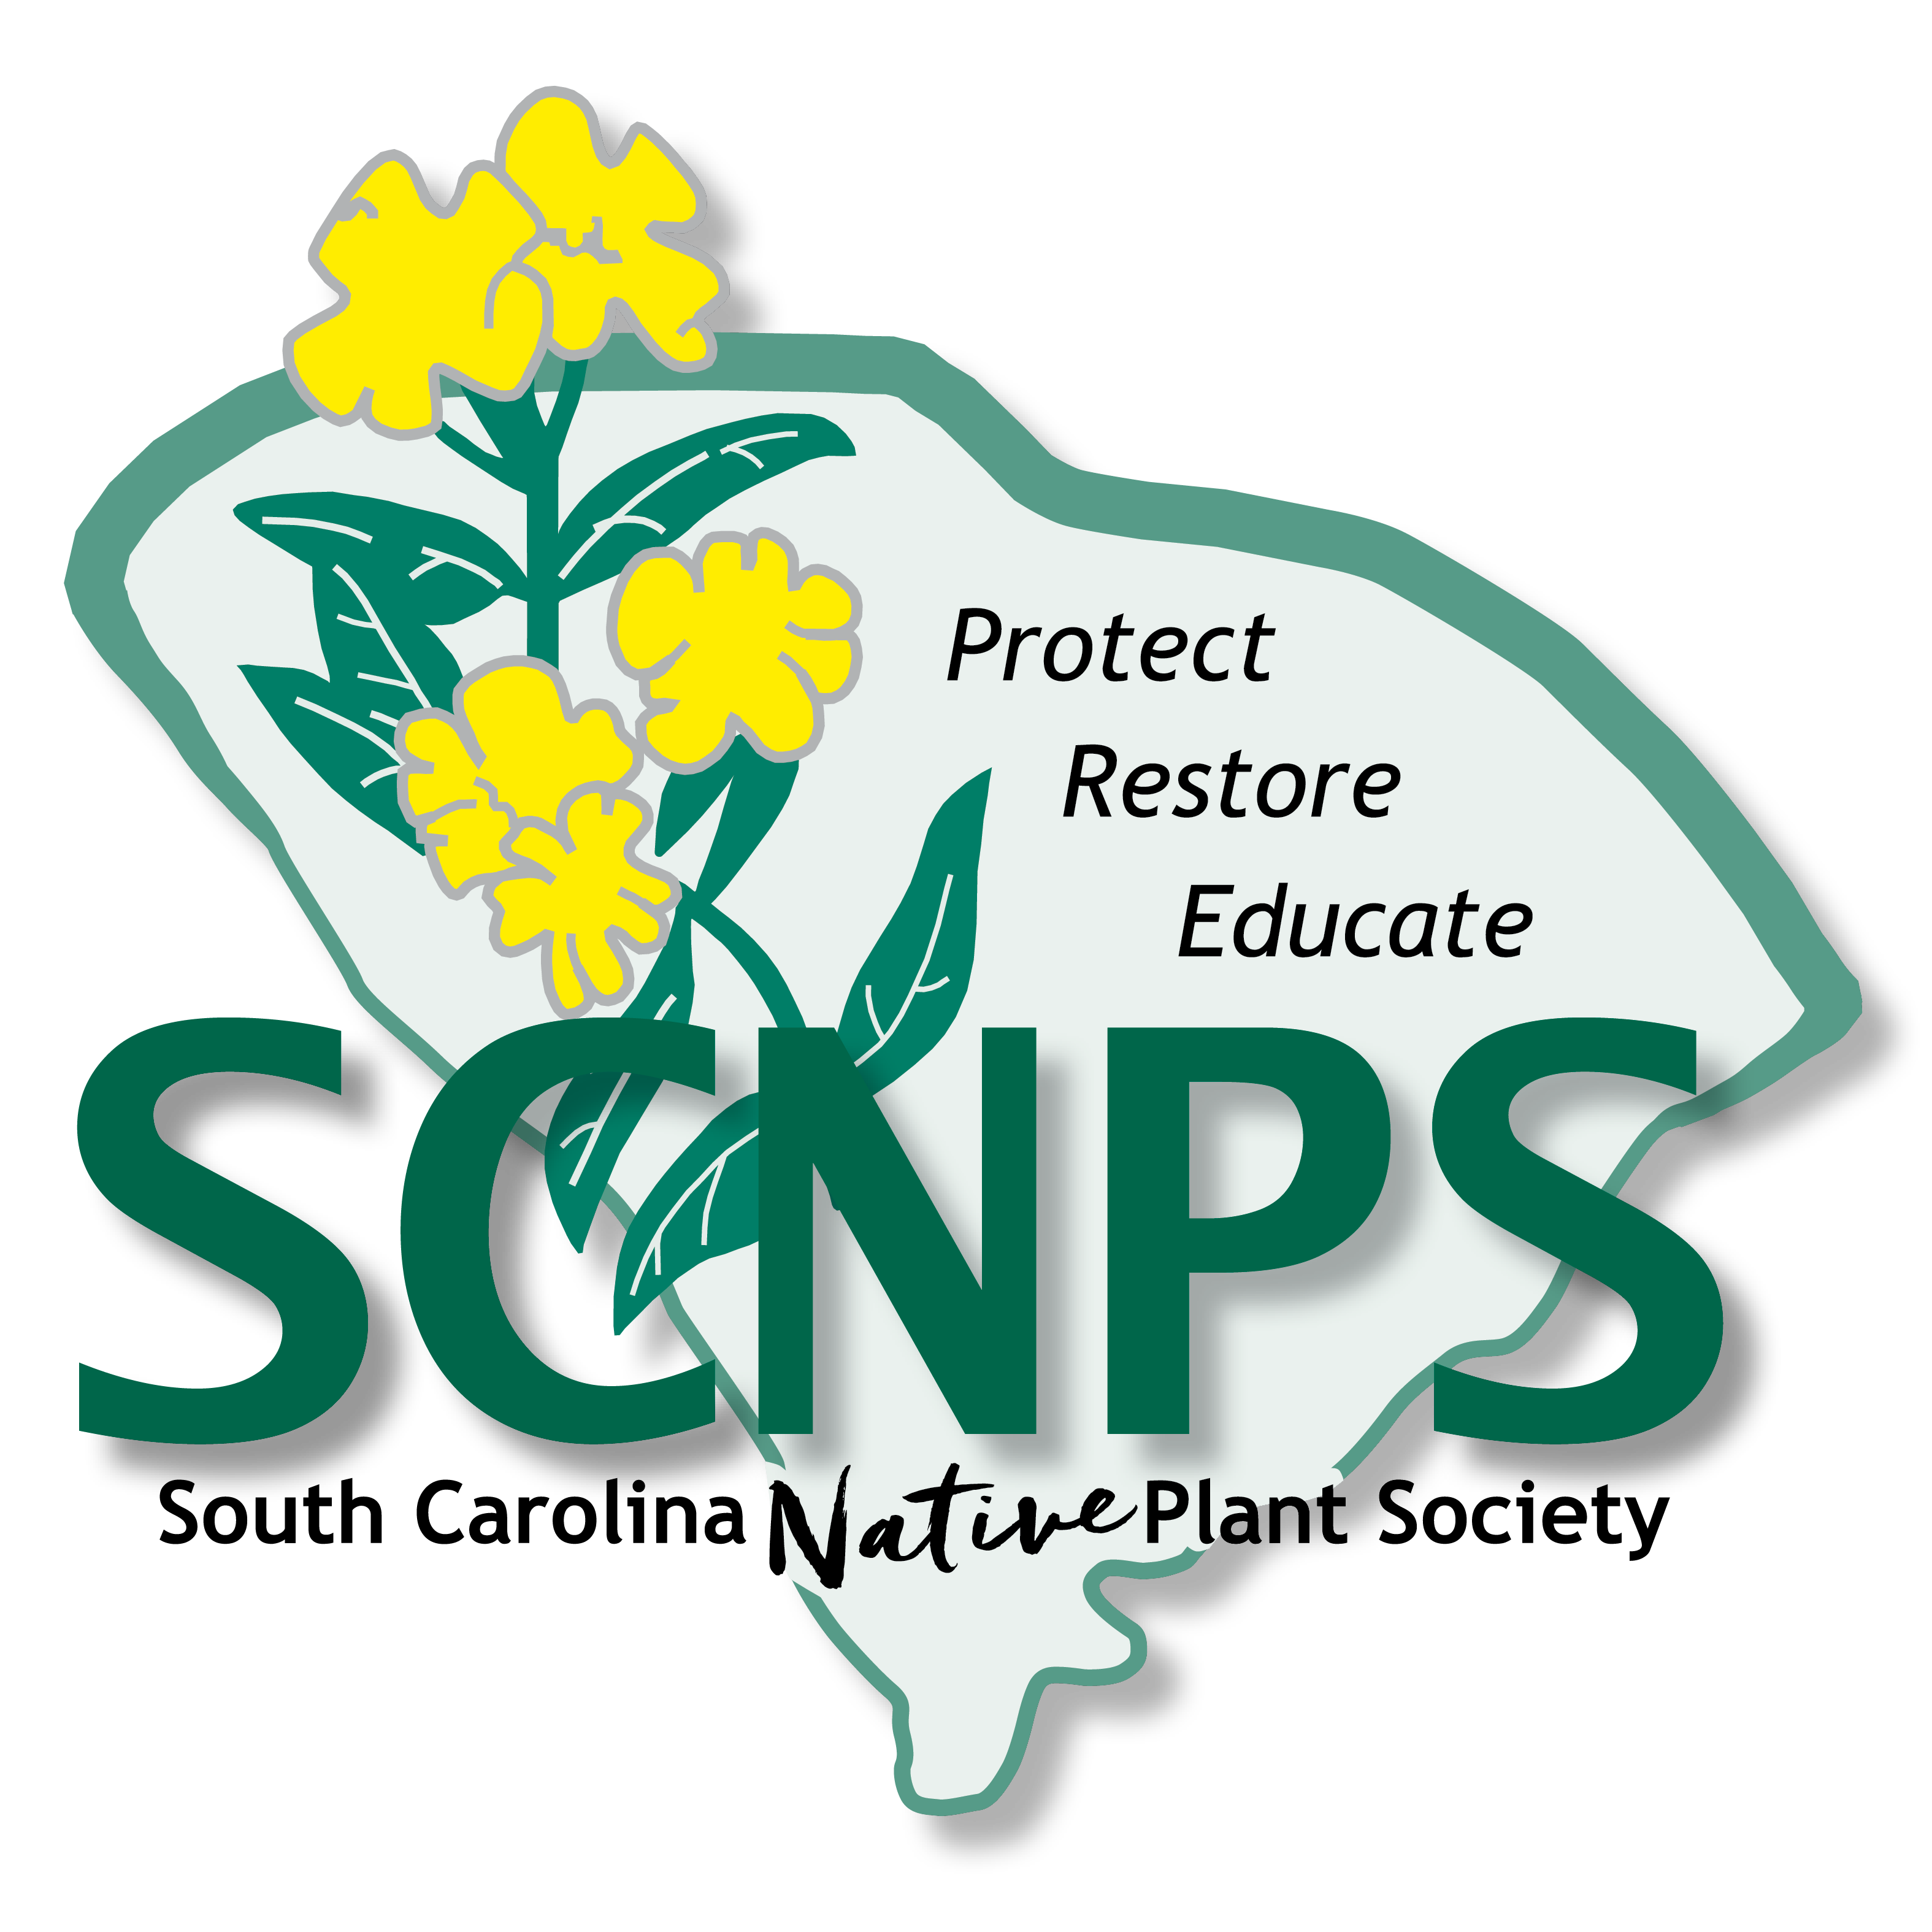 The South Carolina Native Plant Society